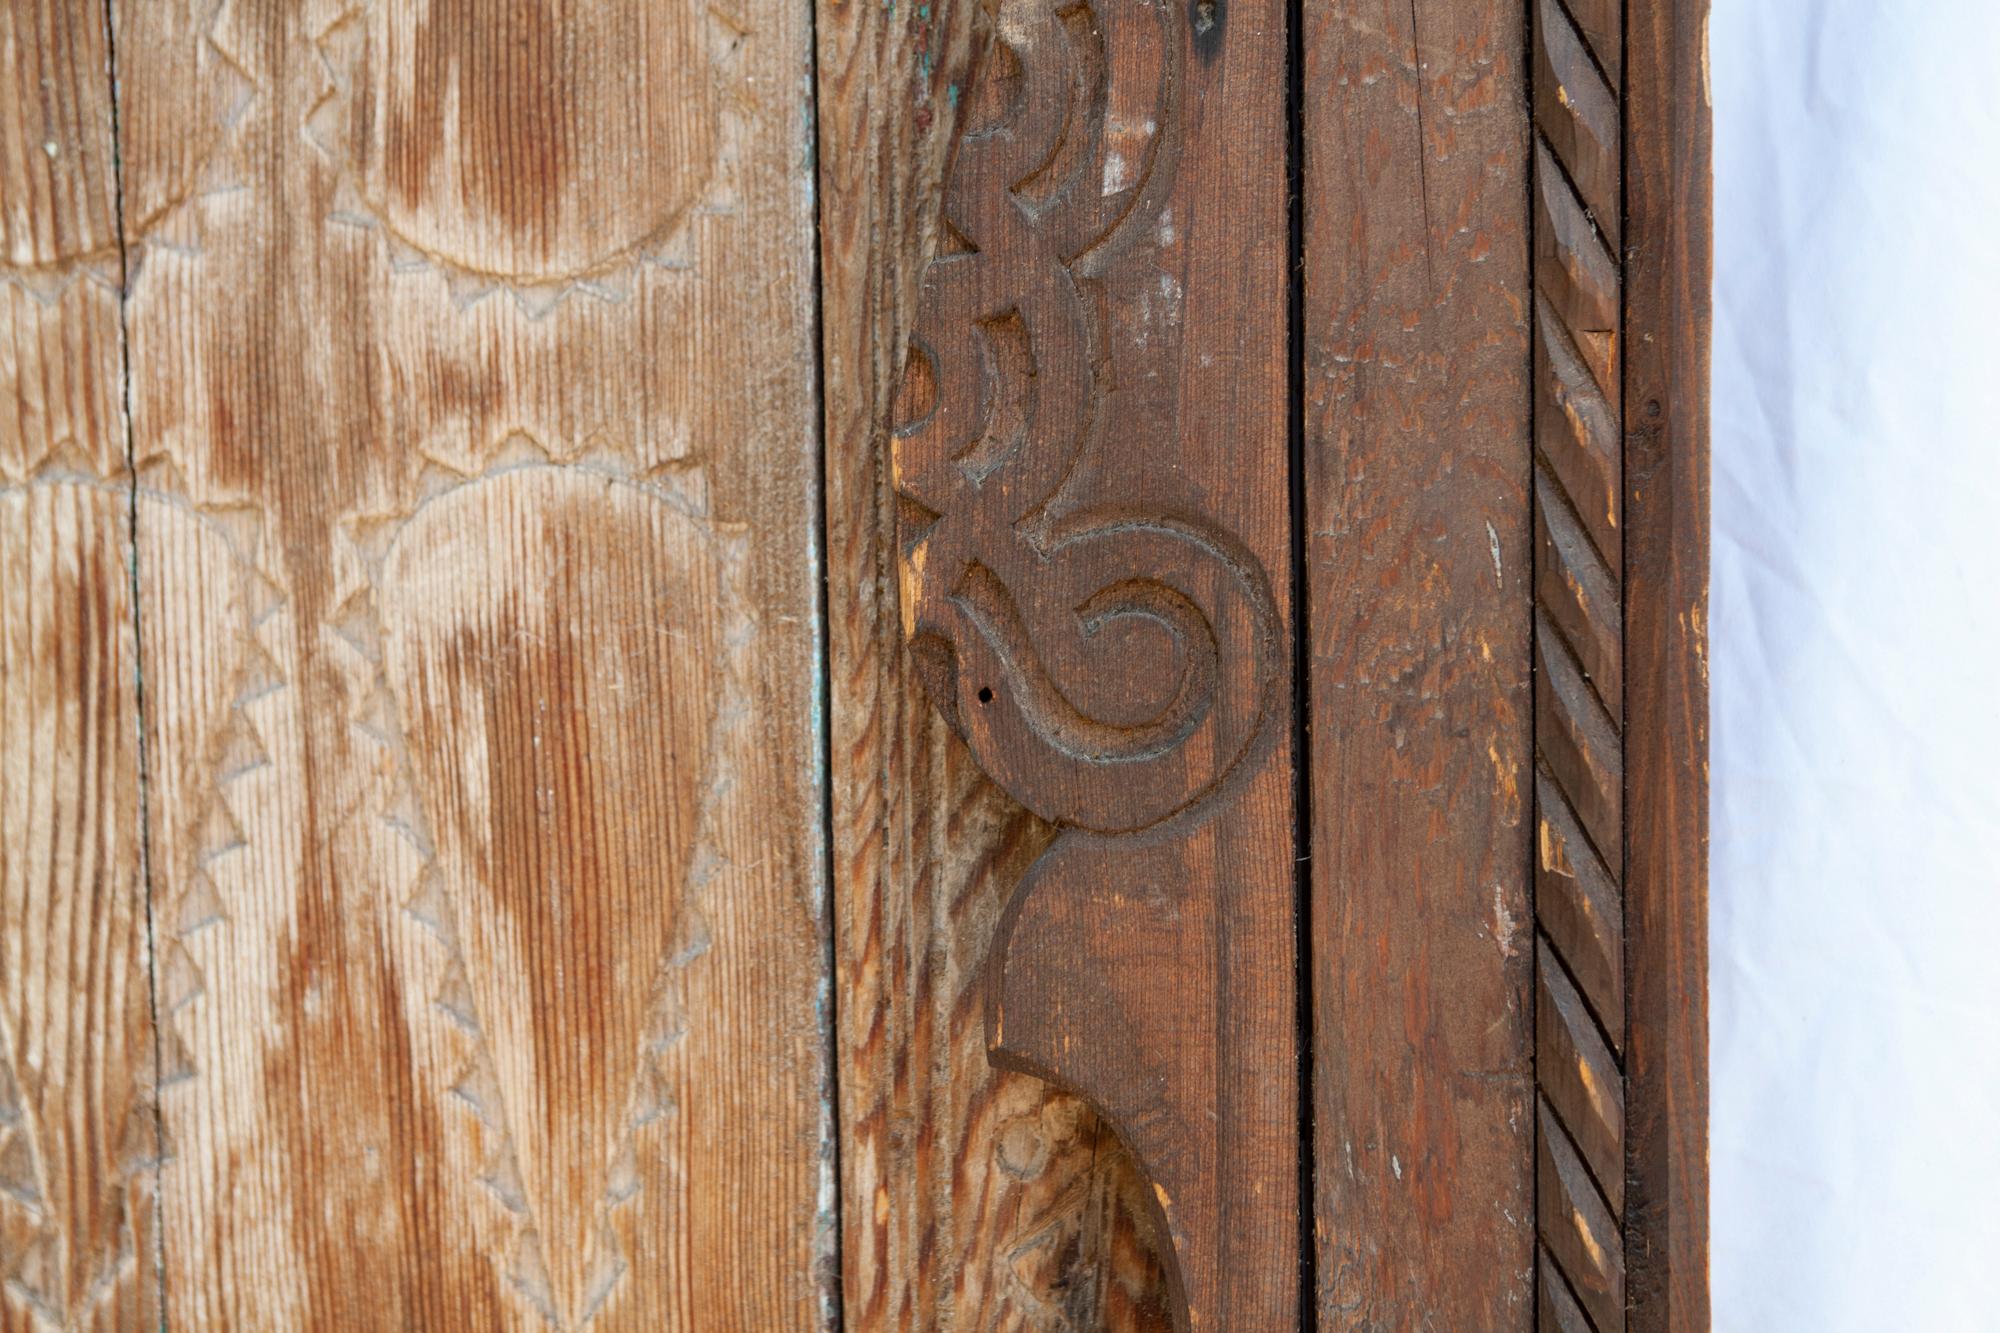 Porte Marocaine Antique ; fait à la main dans une porte en bois vieilli & l'original.  cadre.
La peinture vert pâle vieillie sur le bois vieilli est également d'origine.
Détails sculptés primitifs. Accents métalliques.
 29ʺW × 5ʺD × 96ʺH